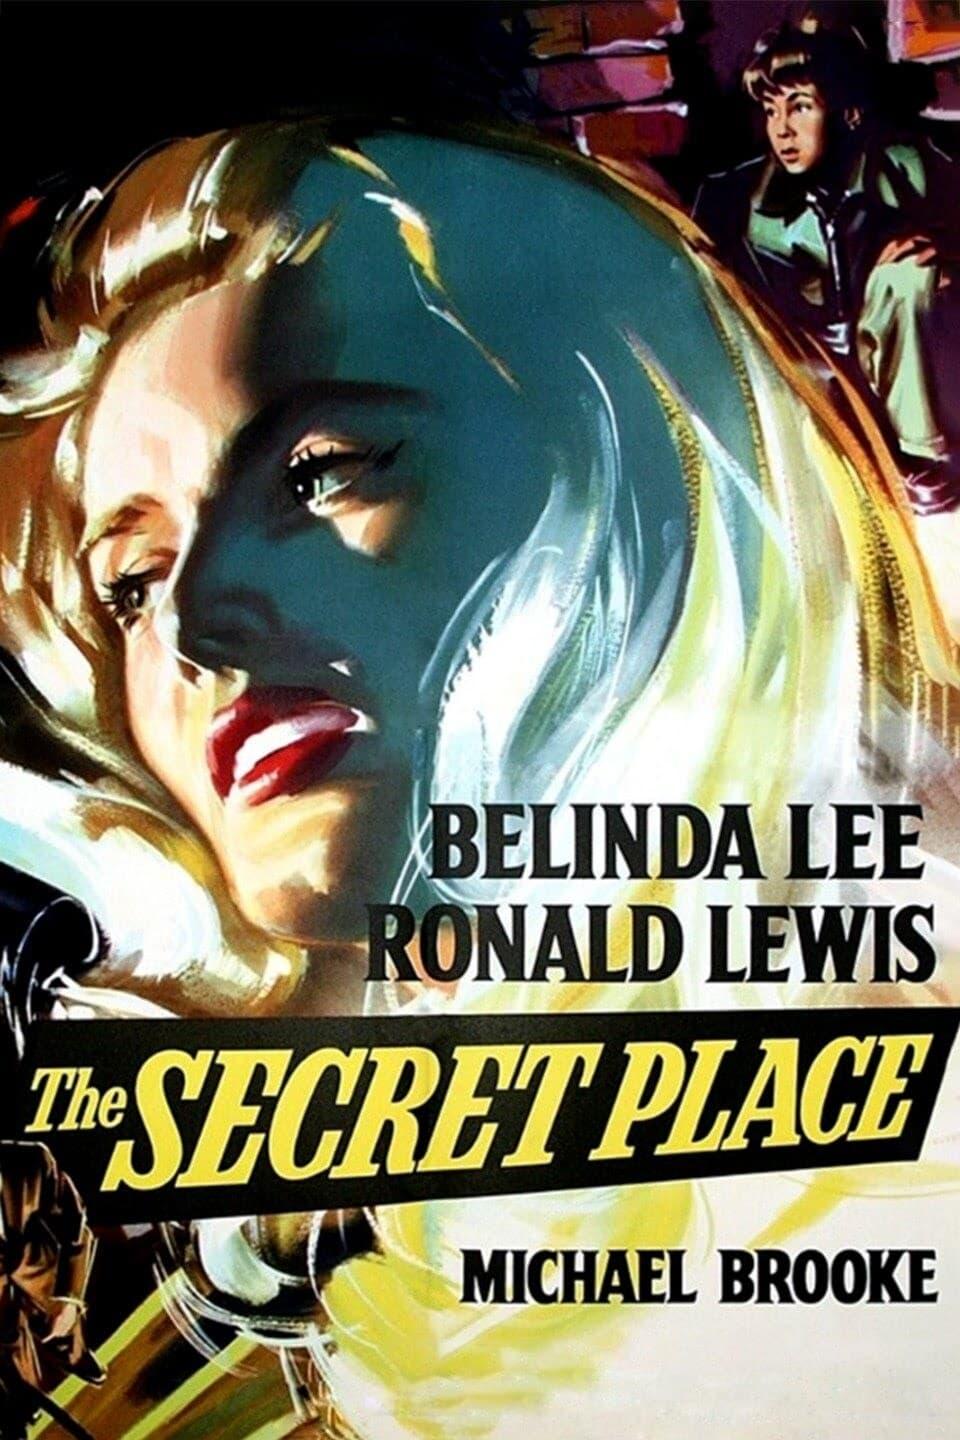 The Secret Place poster